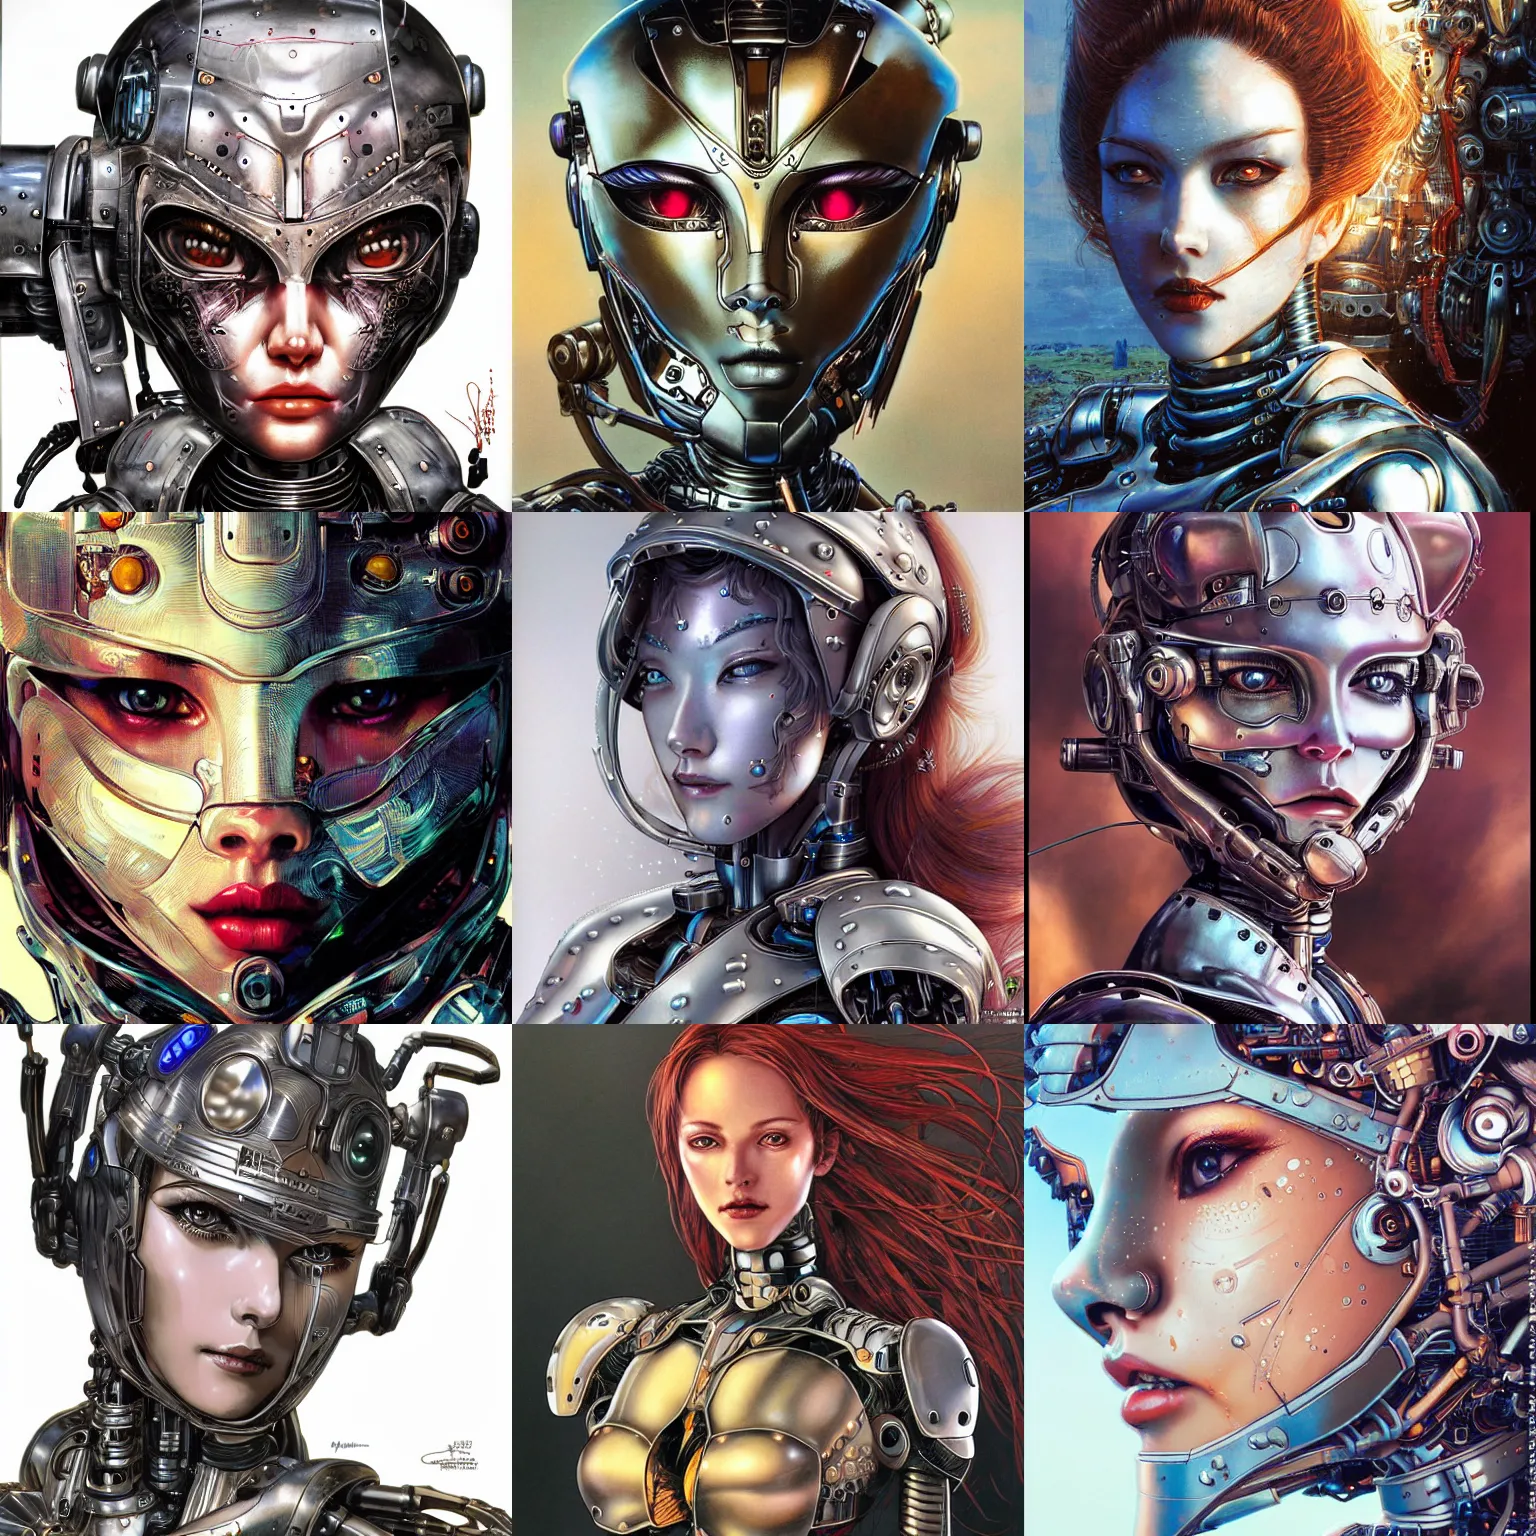 Prompt: portrait of a beautiful female robot wearing mechanical armor, face is highly detailed, by ayami kojima, masamune shirow, josan gonzalez, yoshitaka amano, dan mumford, barclay shaw